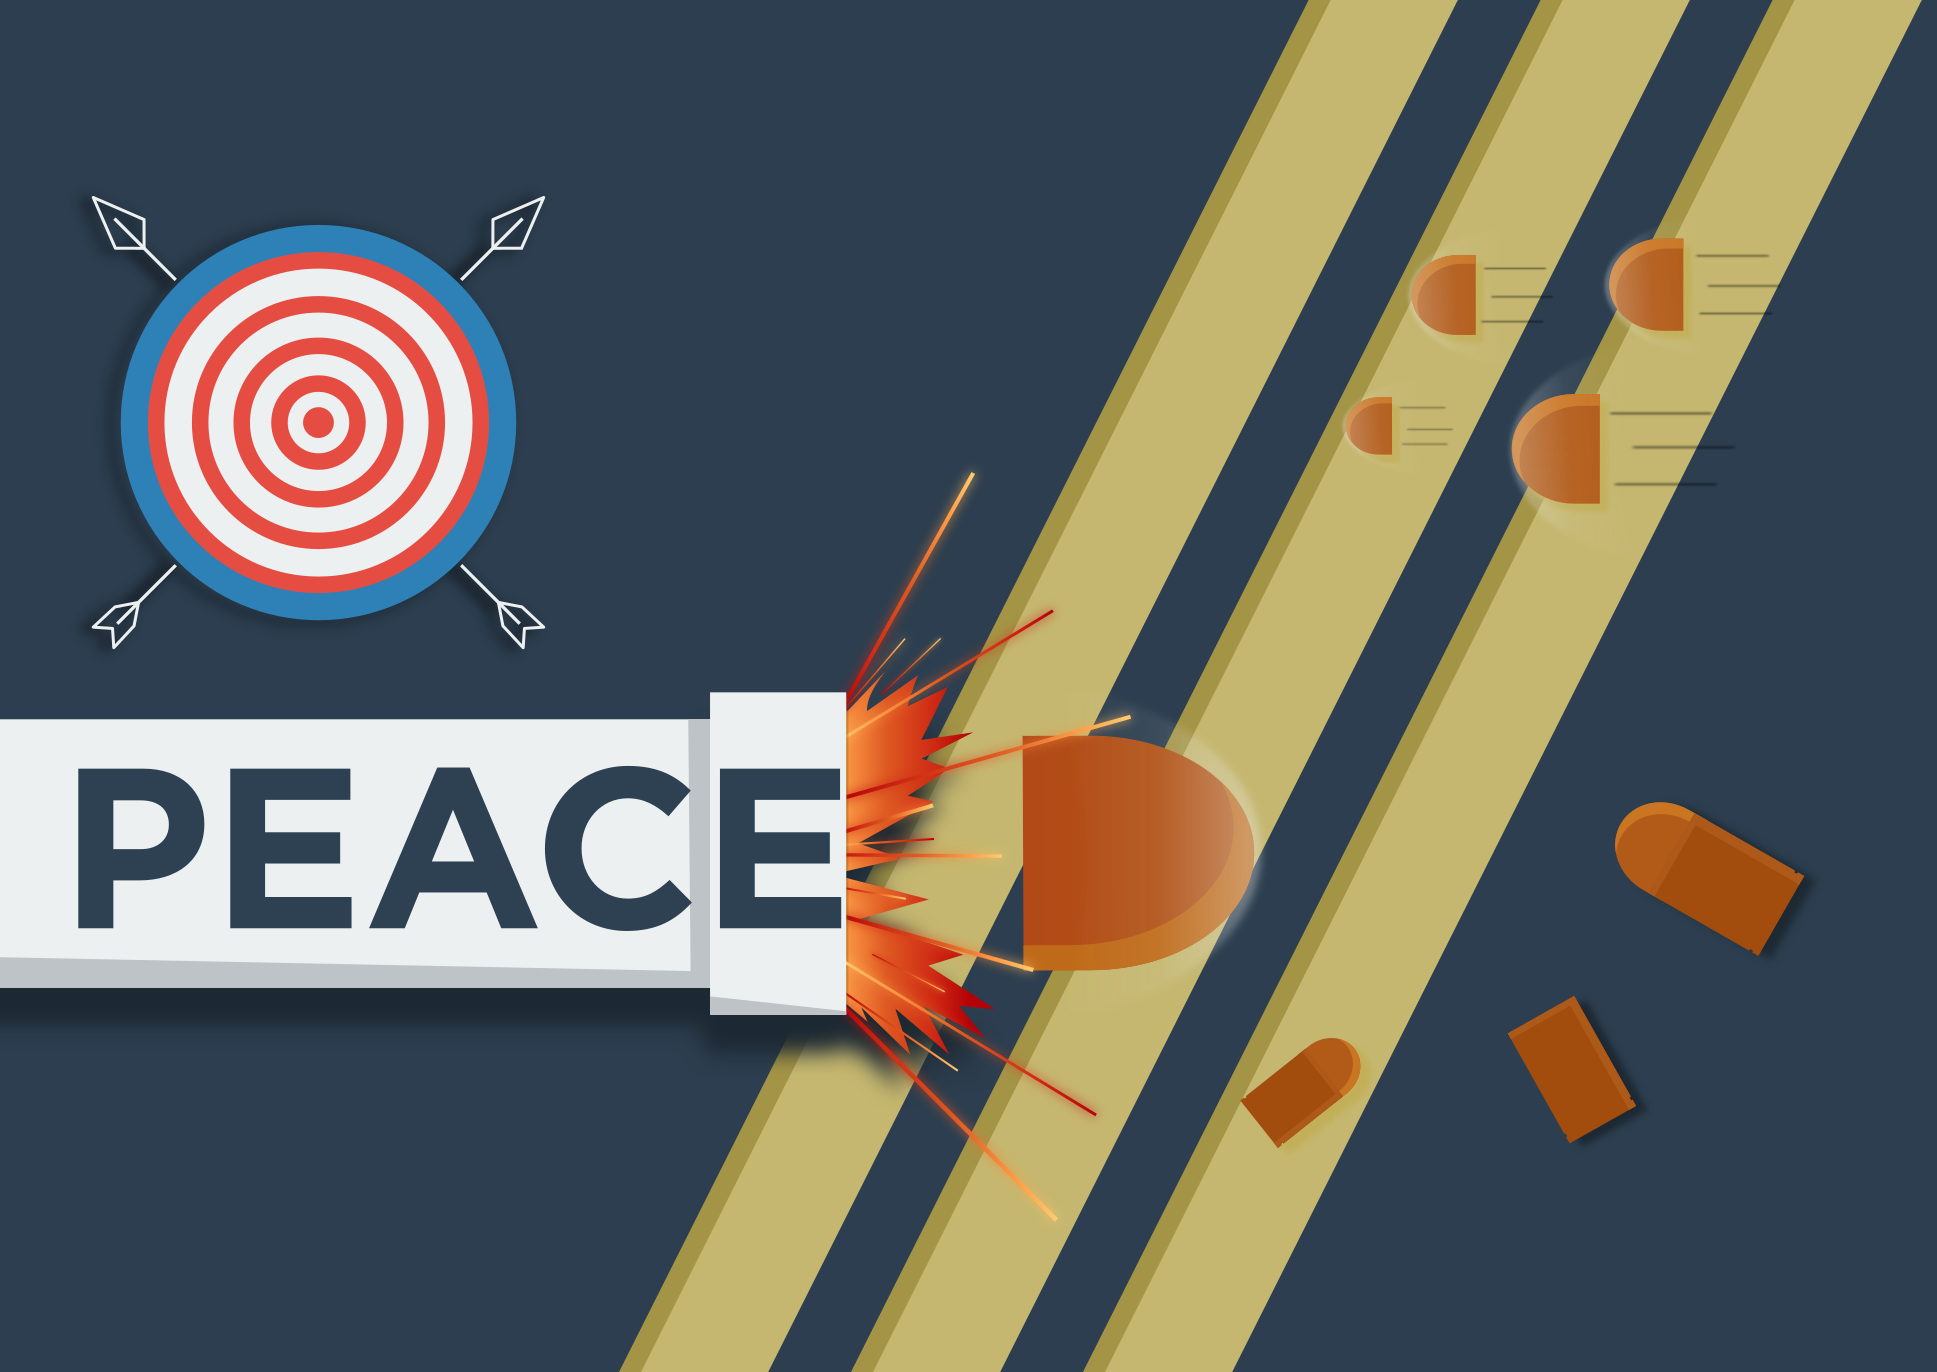 Peace bullet